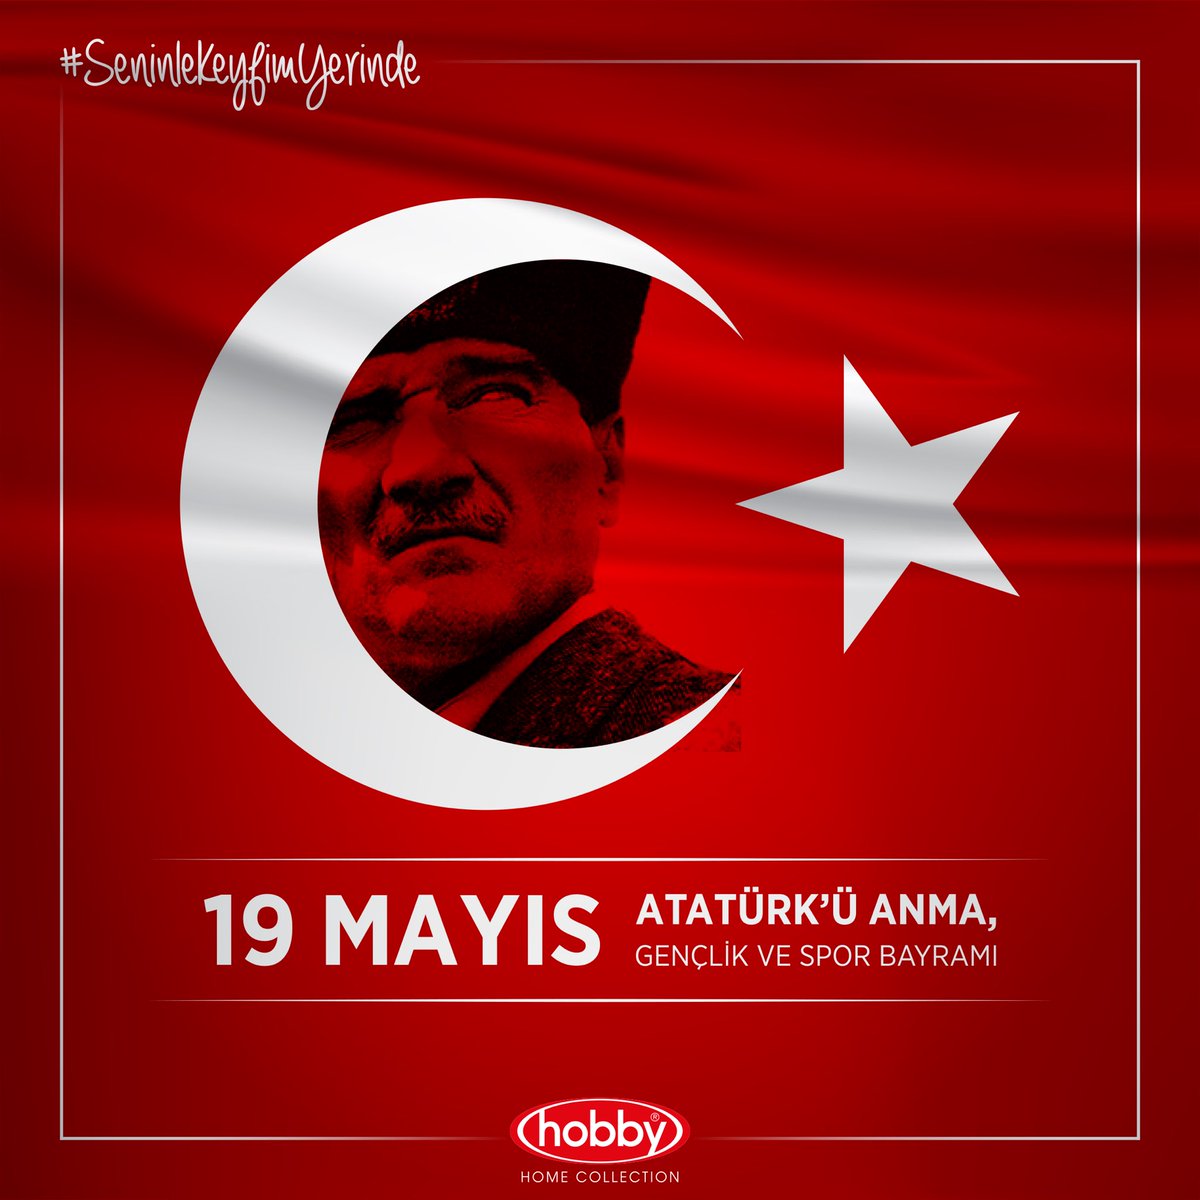 Emanetin emanetimizdir!..

19 Mayıs Atatürk'ü Anma Gençlik ve Spor Bayramımız Kutlu Olsun!..  🇹🇷

#SeninleKeyfimYerinde #HobbyHomeCollection #19Mayıs #AtatürküAnma #GençlikVeSporBayramı #MustafaKemal #Atatürk #ilkadım #19Mayıs1919